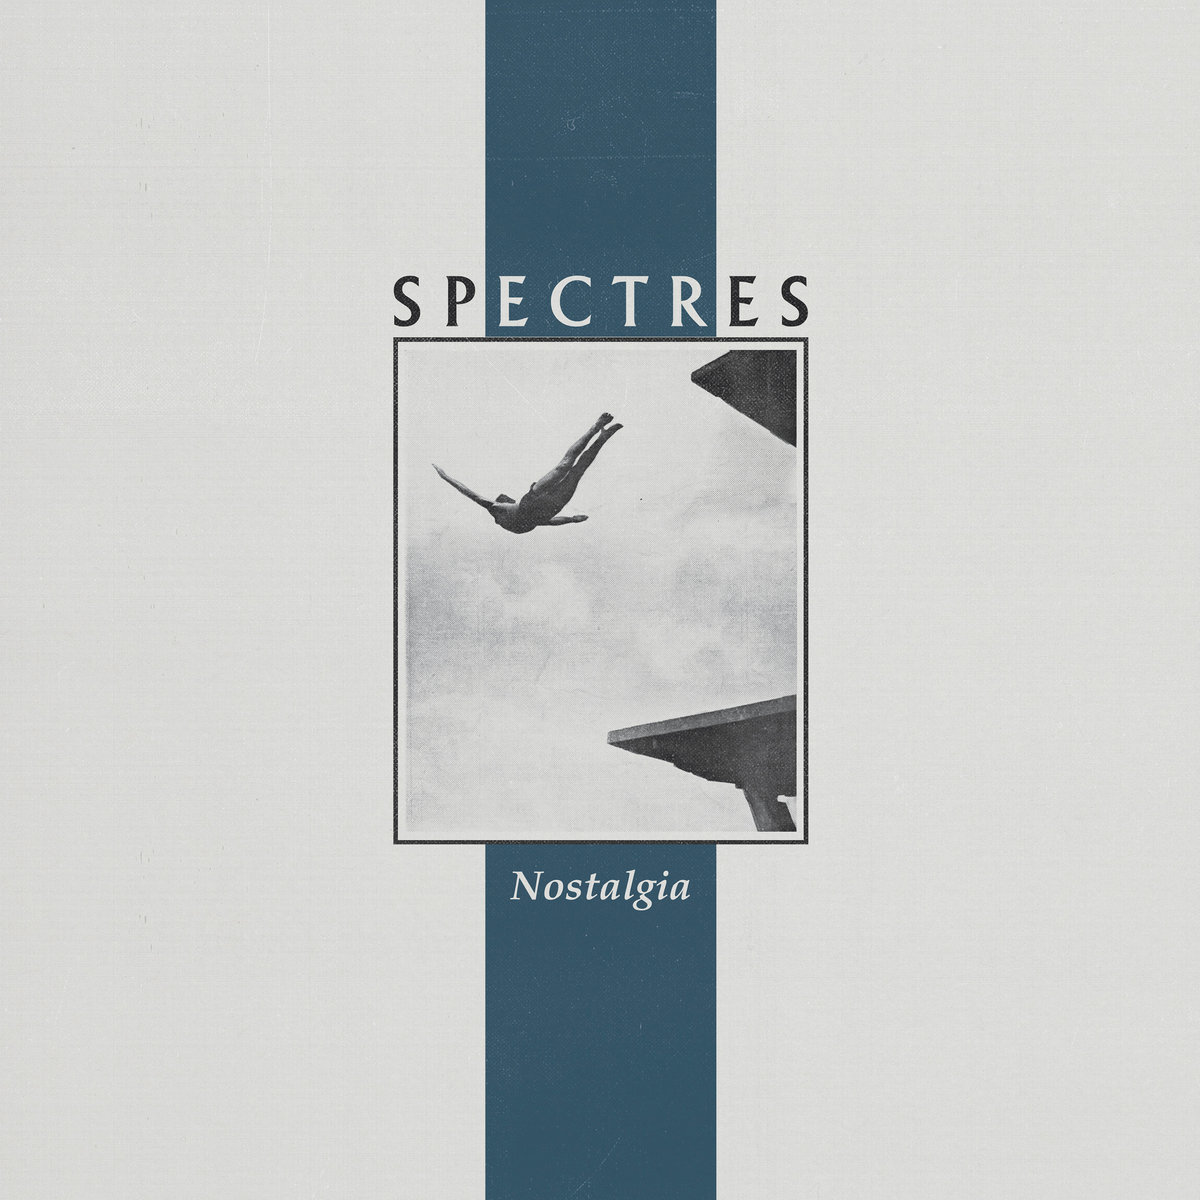 Spectres, “Nostalgia”